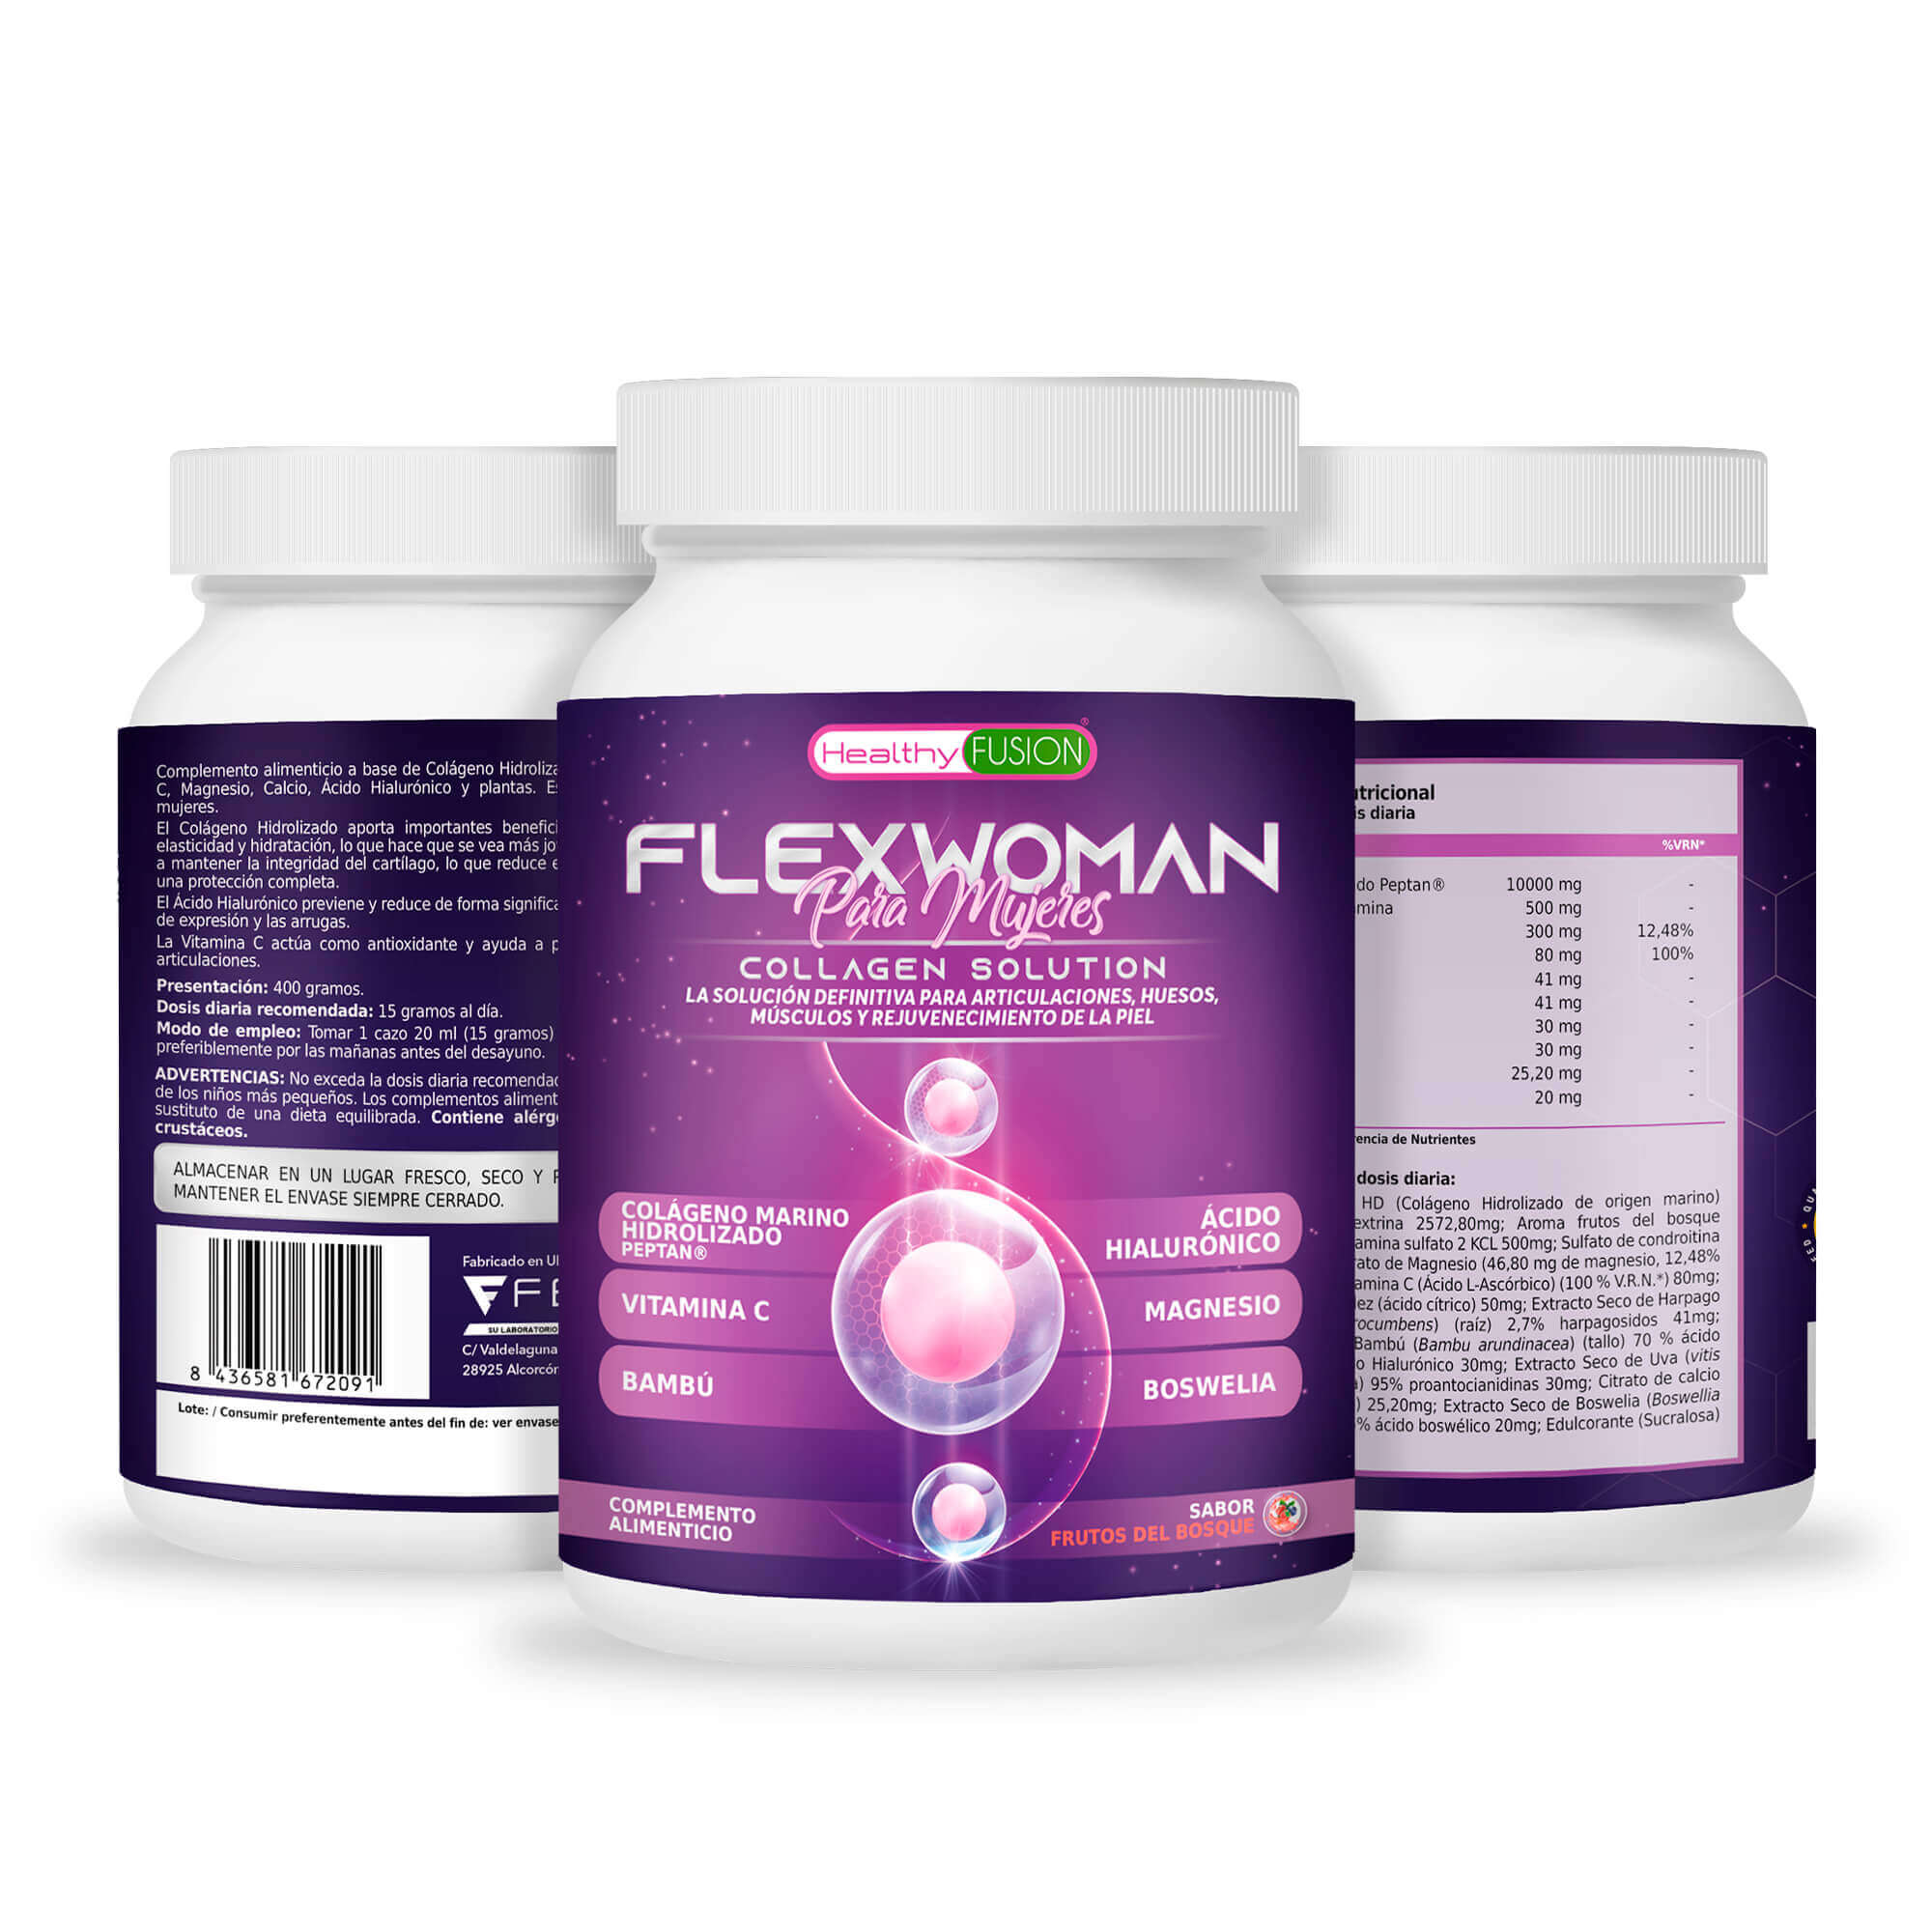 Healthy Fusion - FlexWoman Mujeres contenido